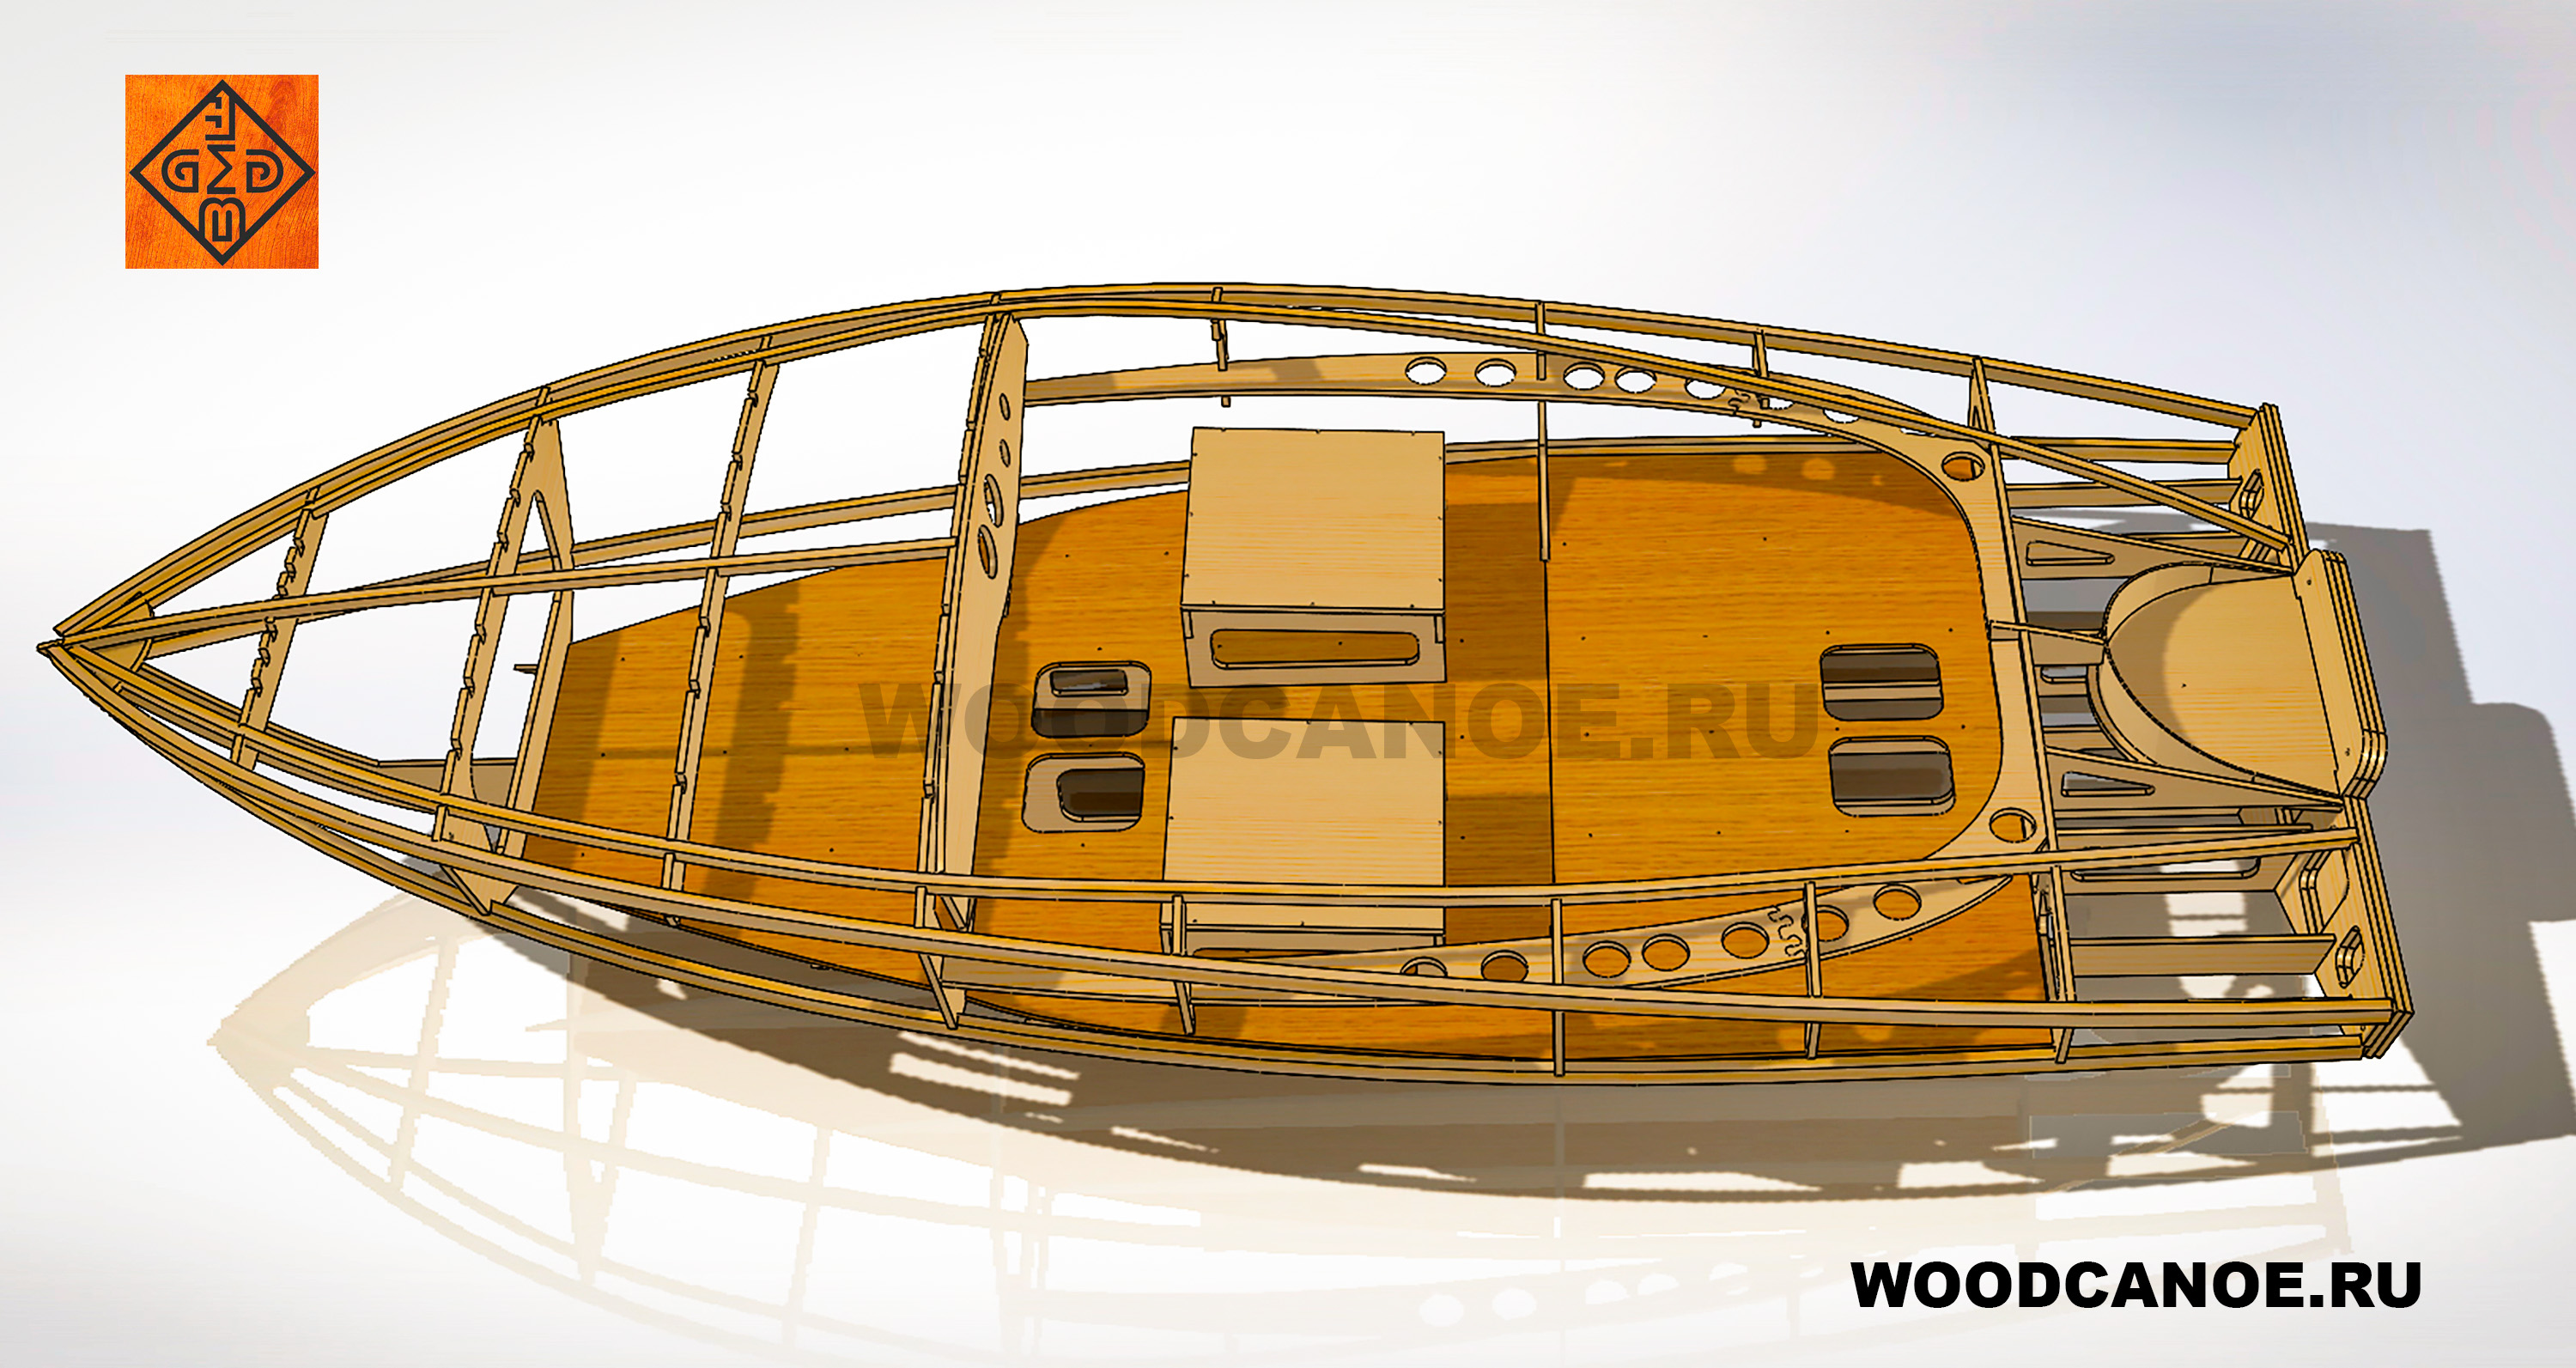 Разработка проекта деревянного катера длиной 3500 мм (КБ "ВУД-КАНОЭ") wooden boat project